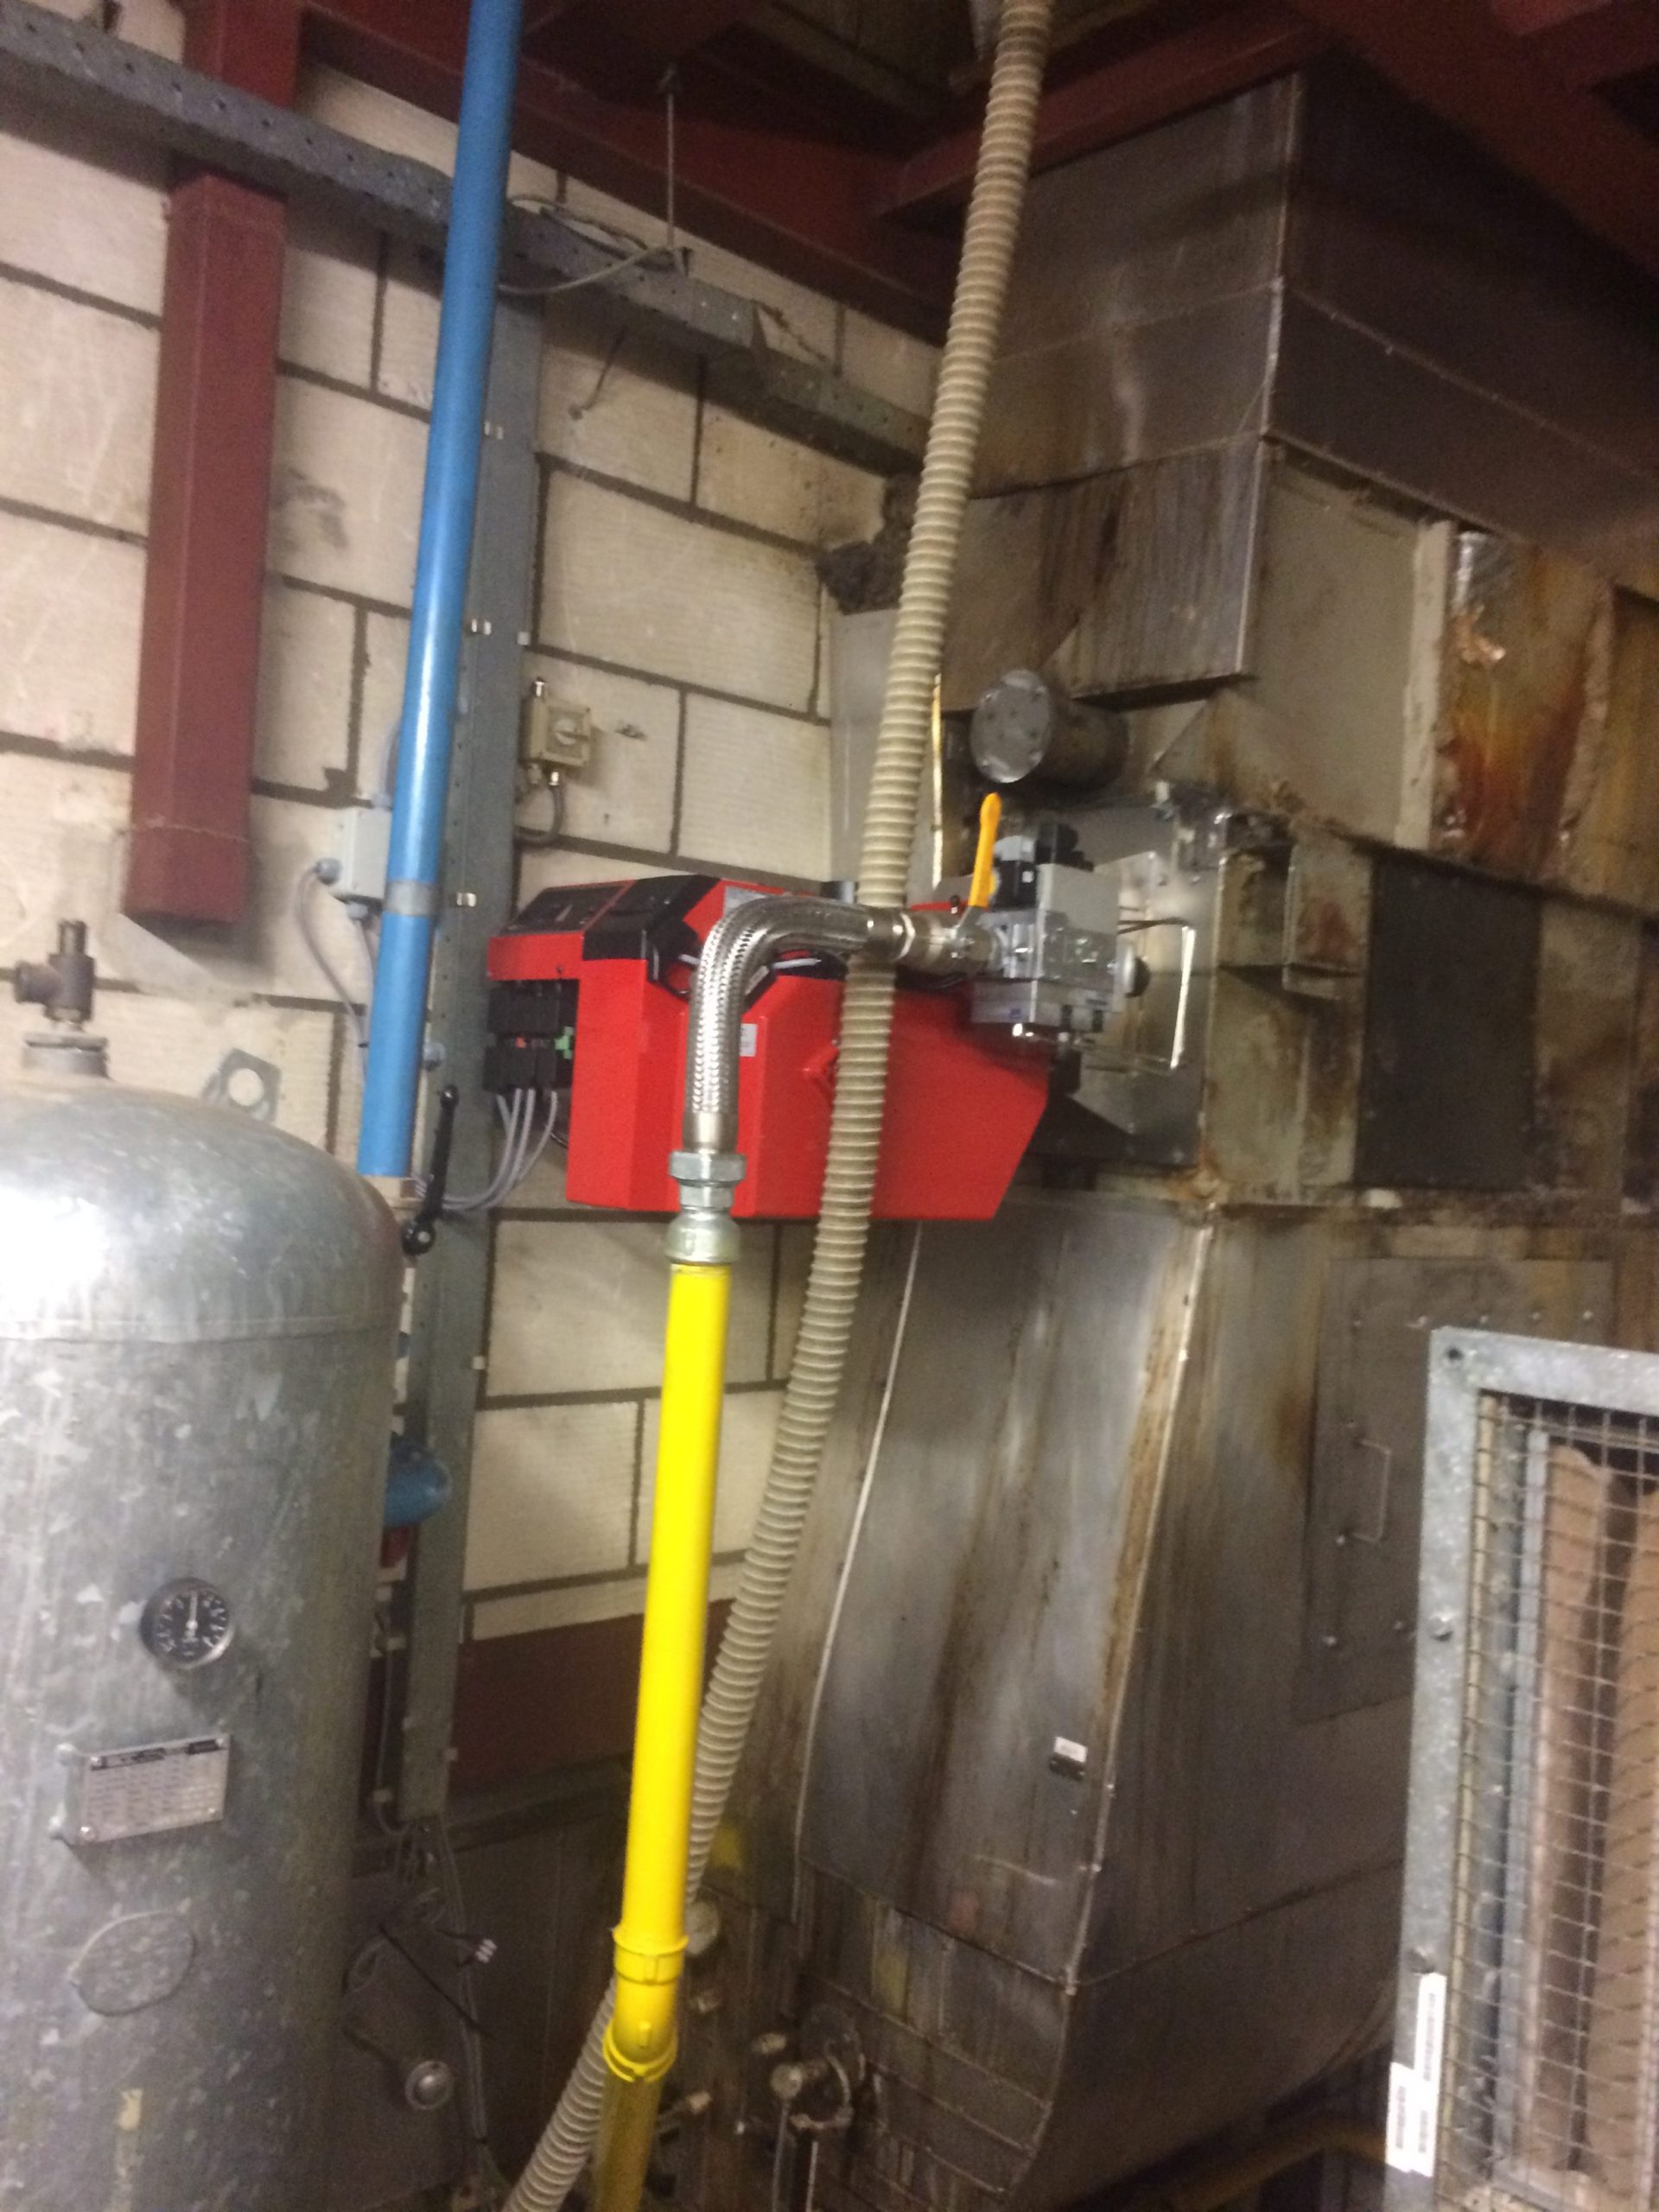 Bentongasbrenner installiert auf einer industriellen Trocknungsanlage